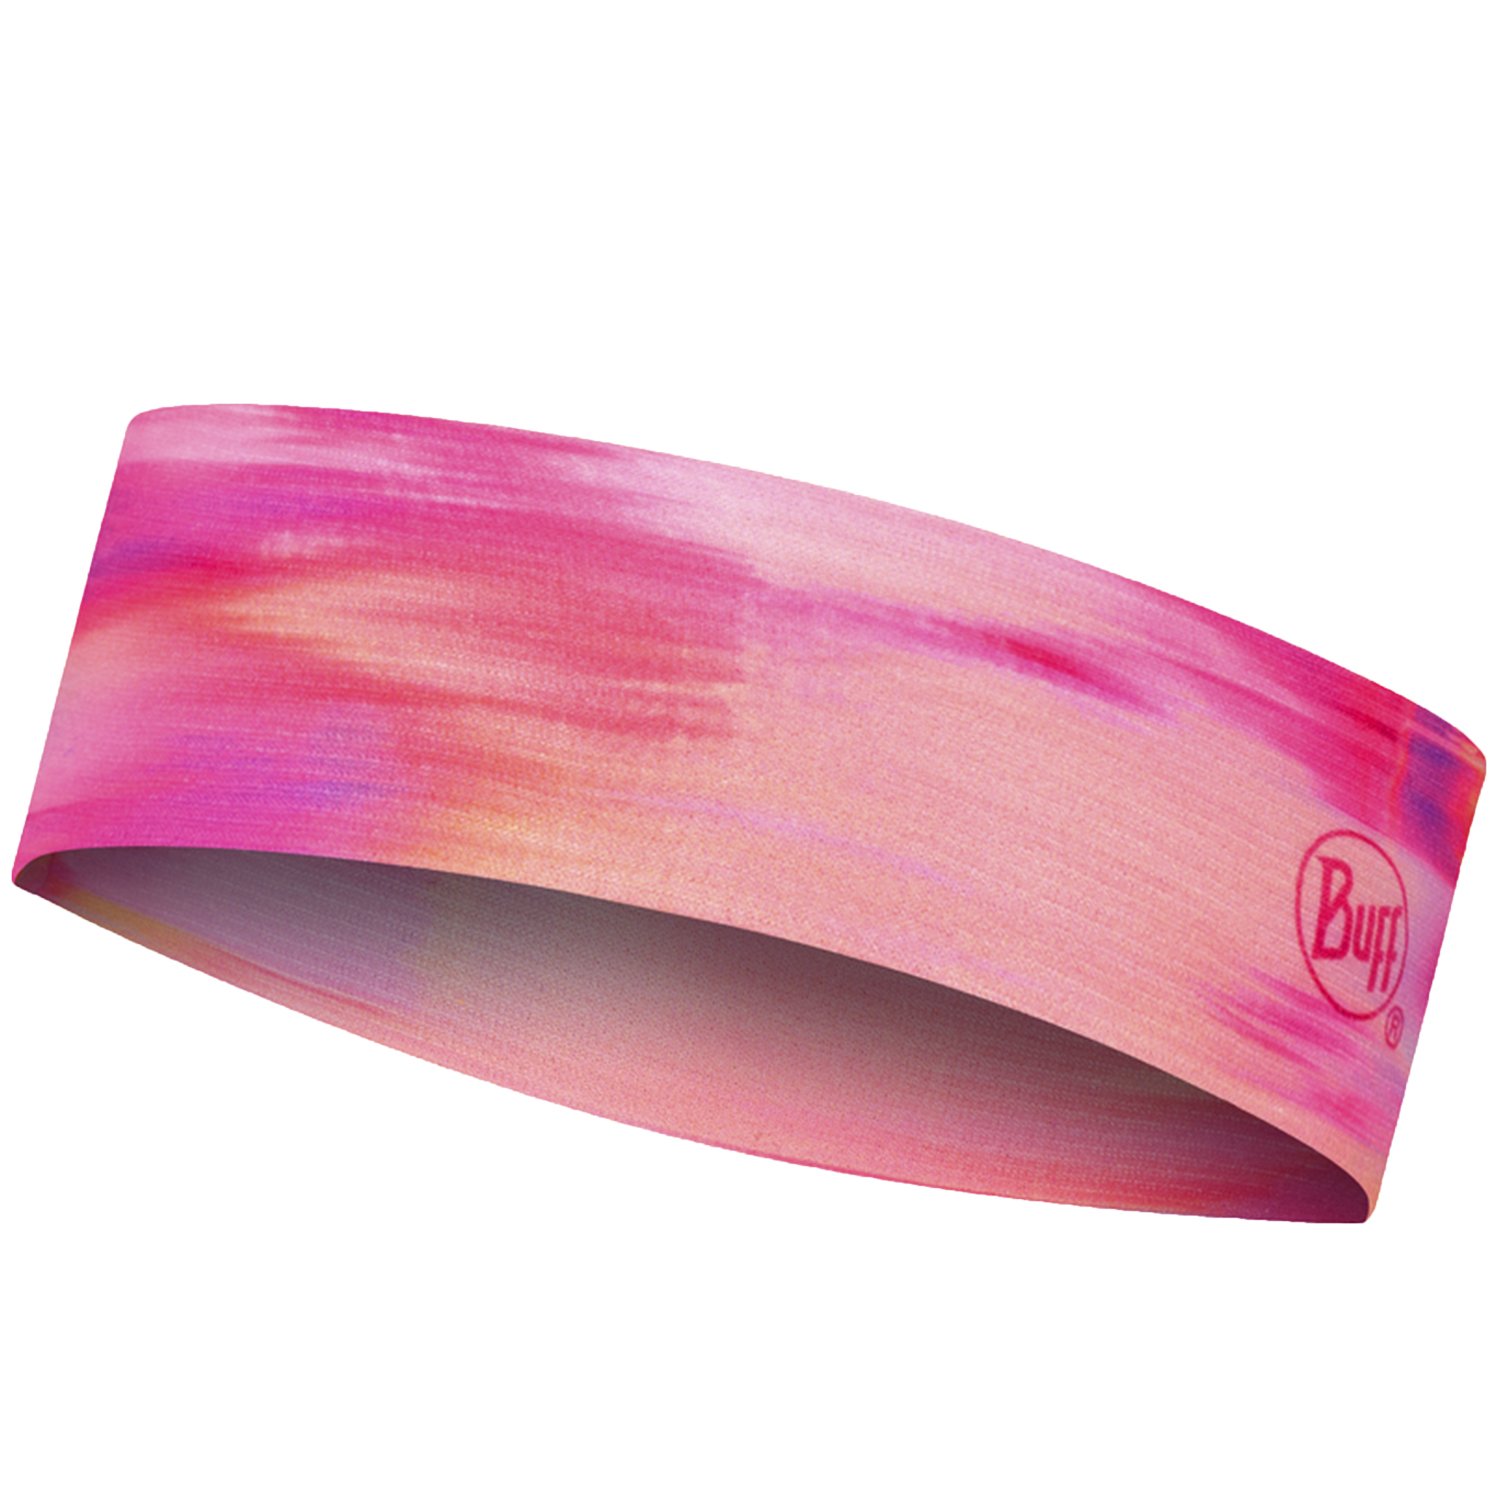 Повязка Buff CoolNet UV+ Slim Headband Sish Pink Fluor, 128749.522.10.00 повязка buff coolnet uv slim headband zat multi женская 131423 555 10 00